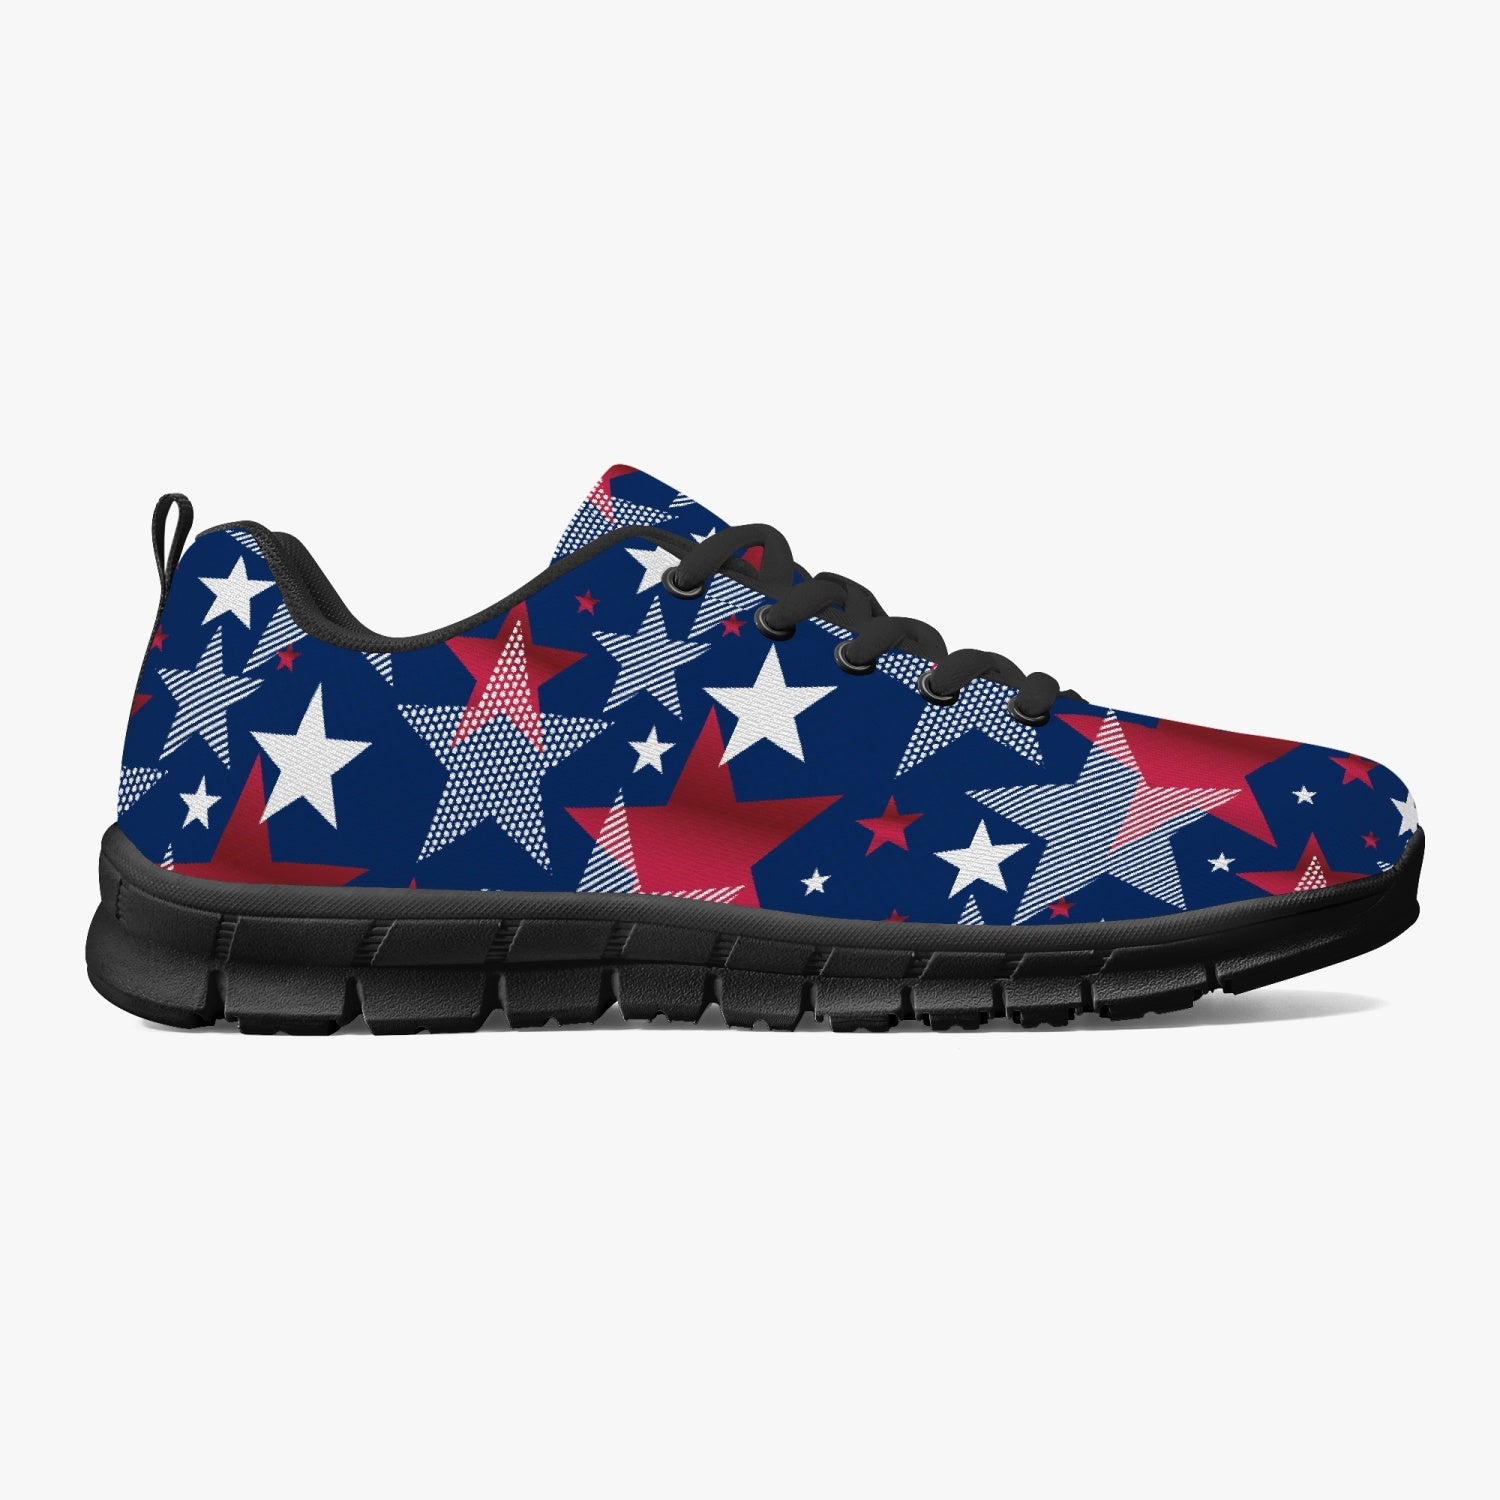 Starburst  Fireworks Sneakers